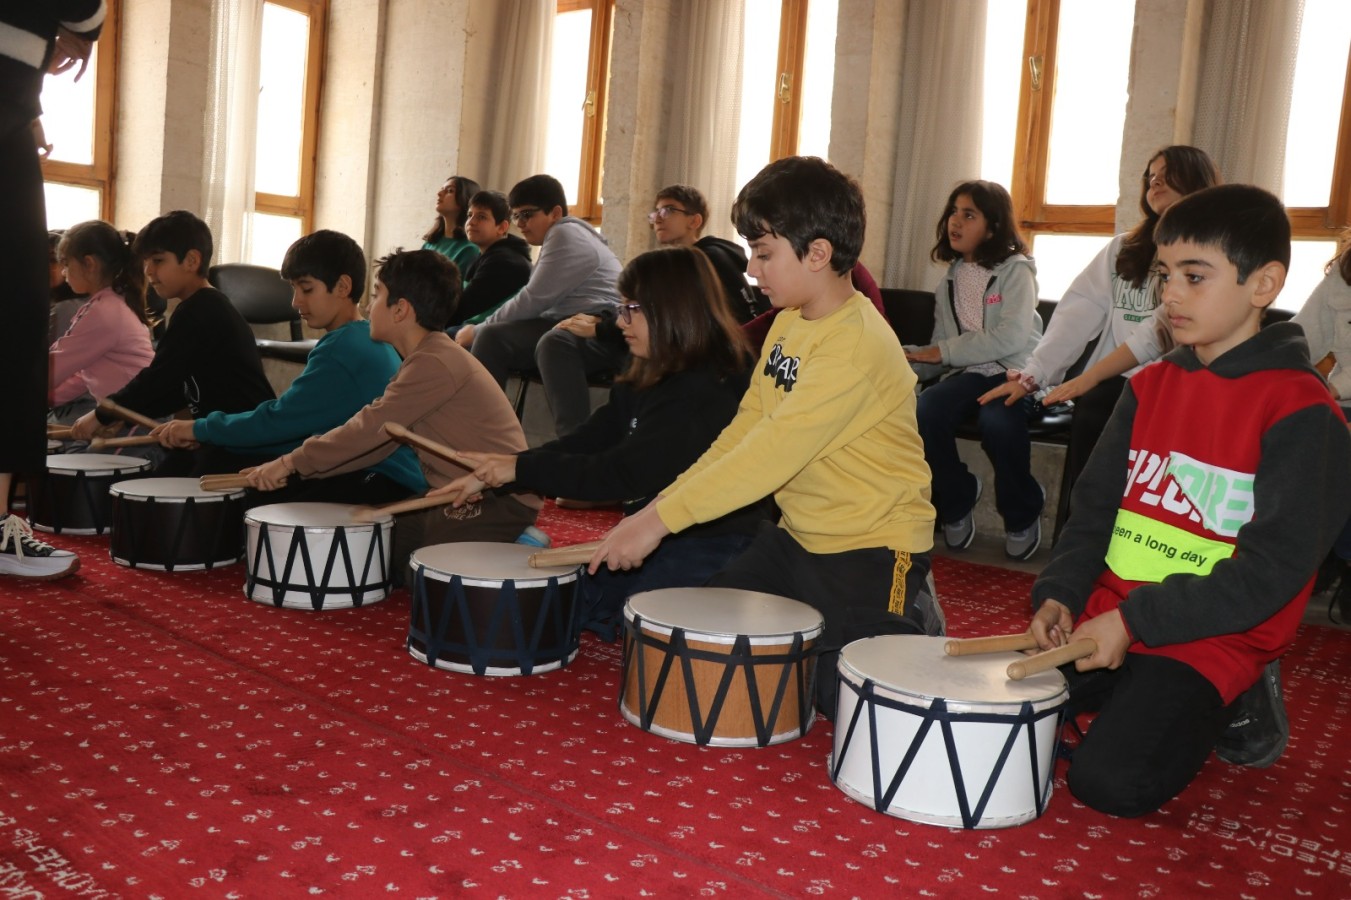 Büyükşehir çocuk konservatuarında çocuklara müzik eğitimi veriliyor